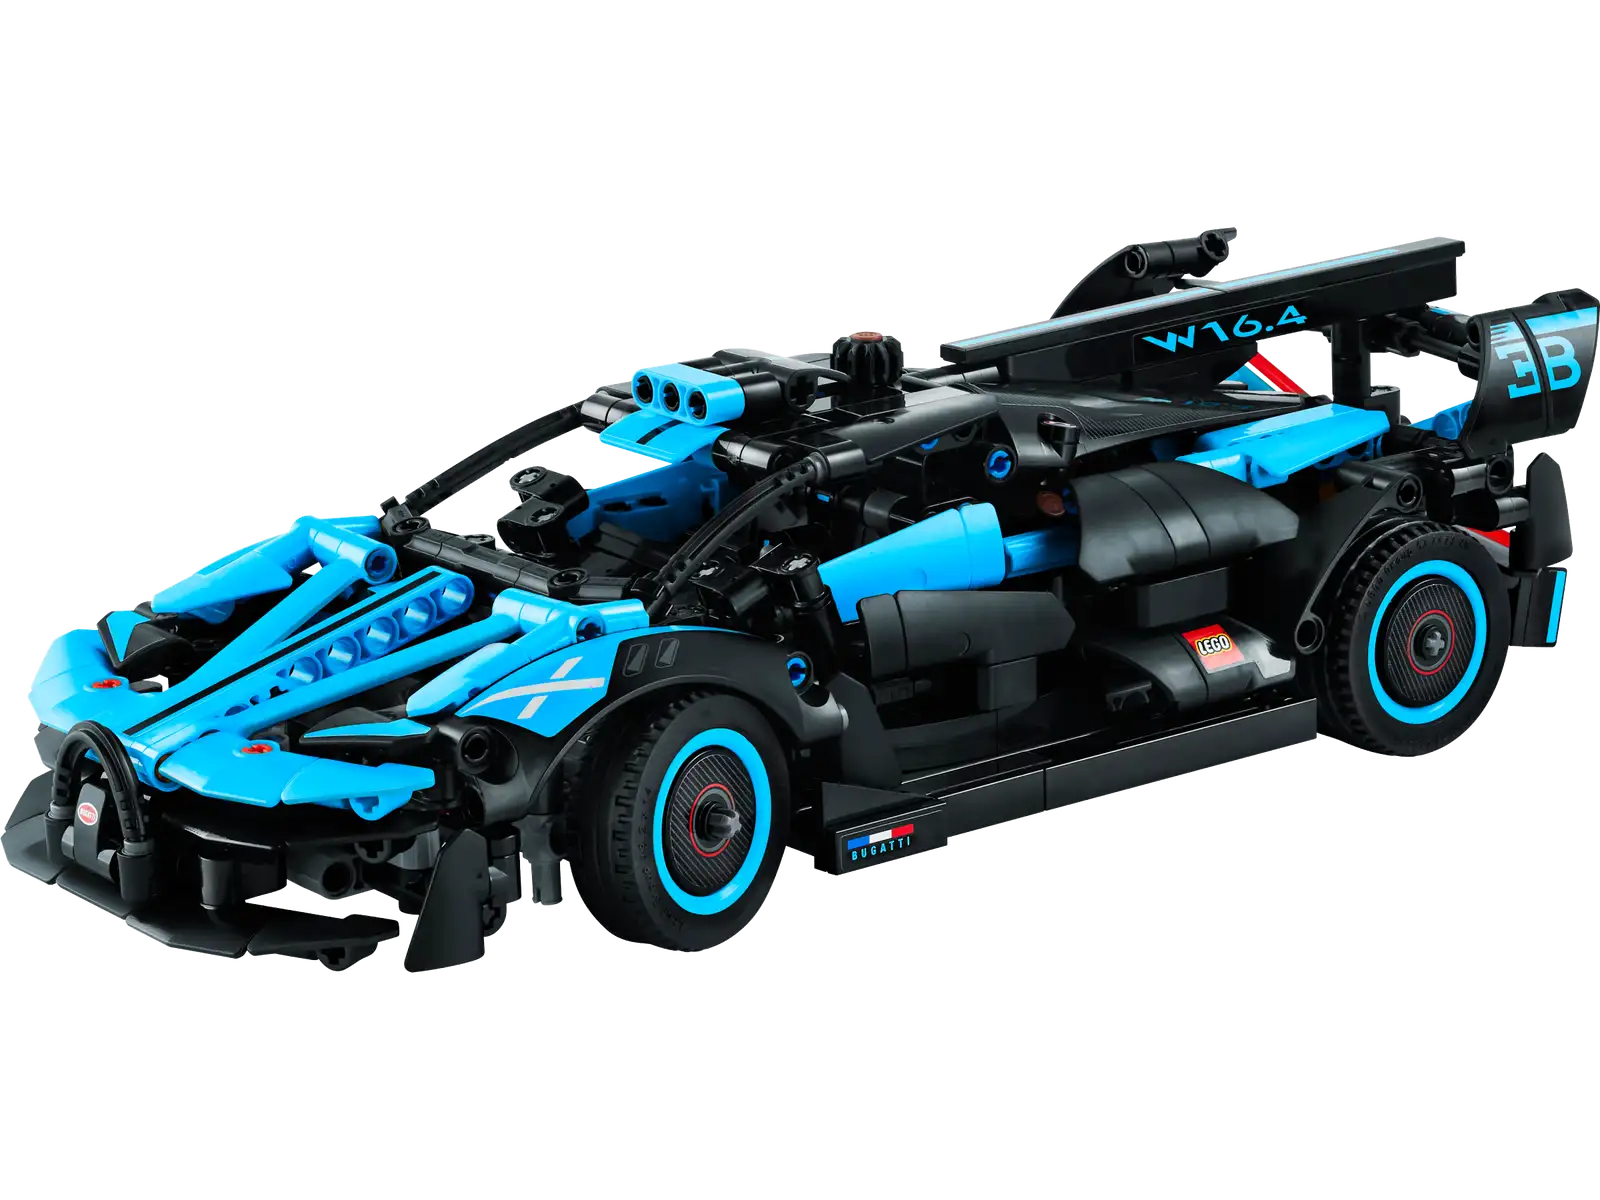 LEGO Technic Bugatti Bolide returns in a new 